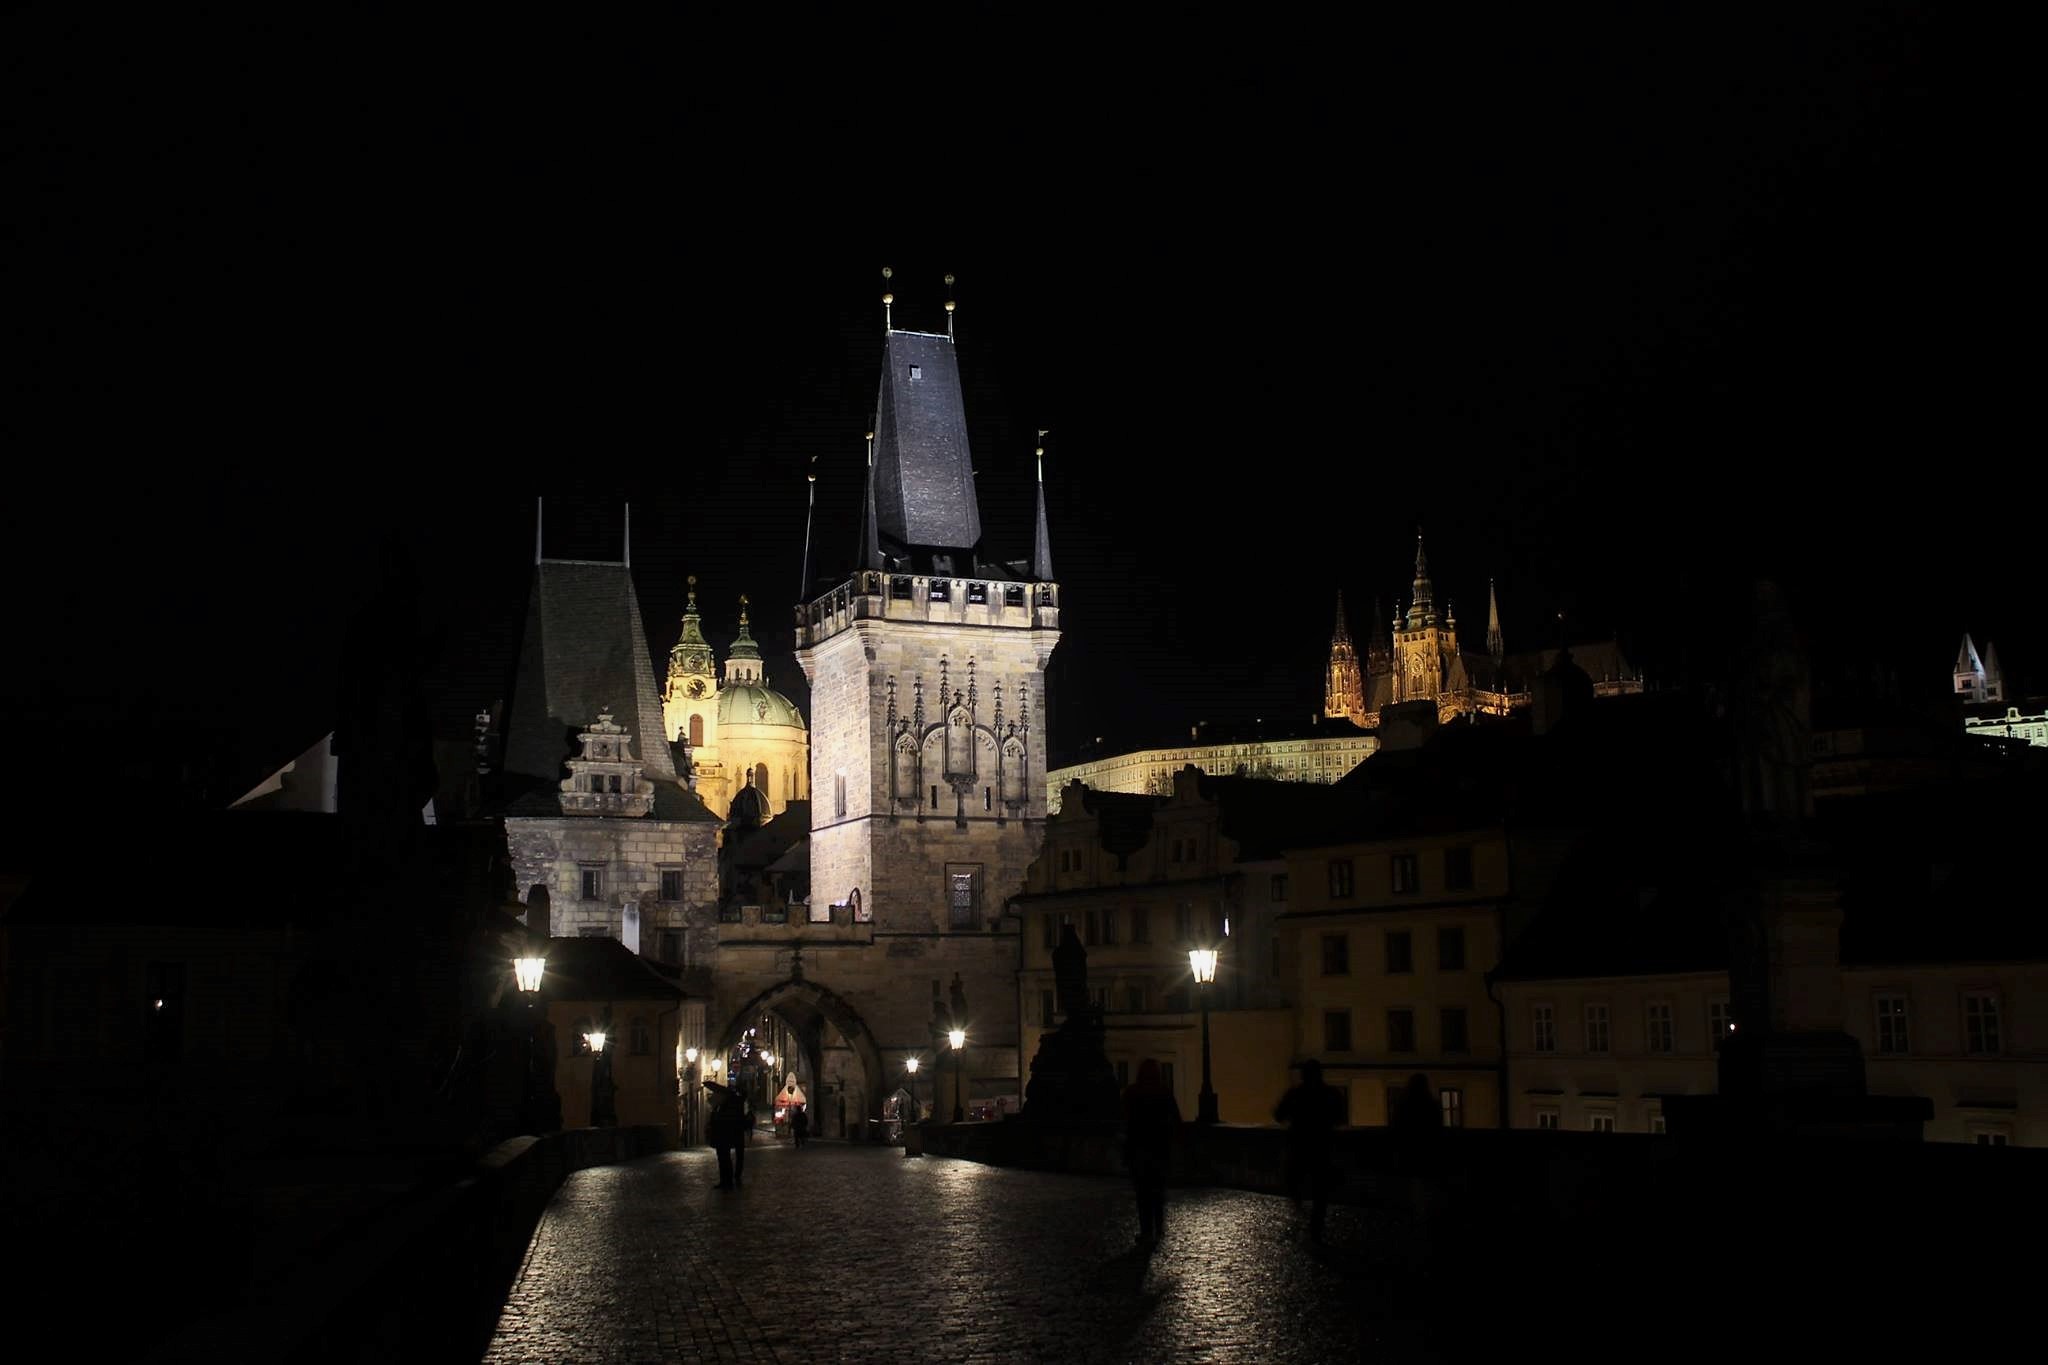 Praga -Ponte Carlo -night view...